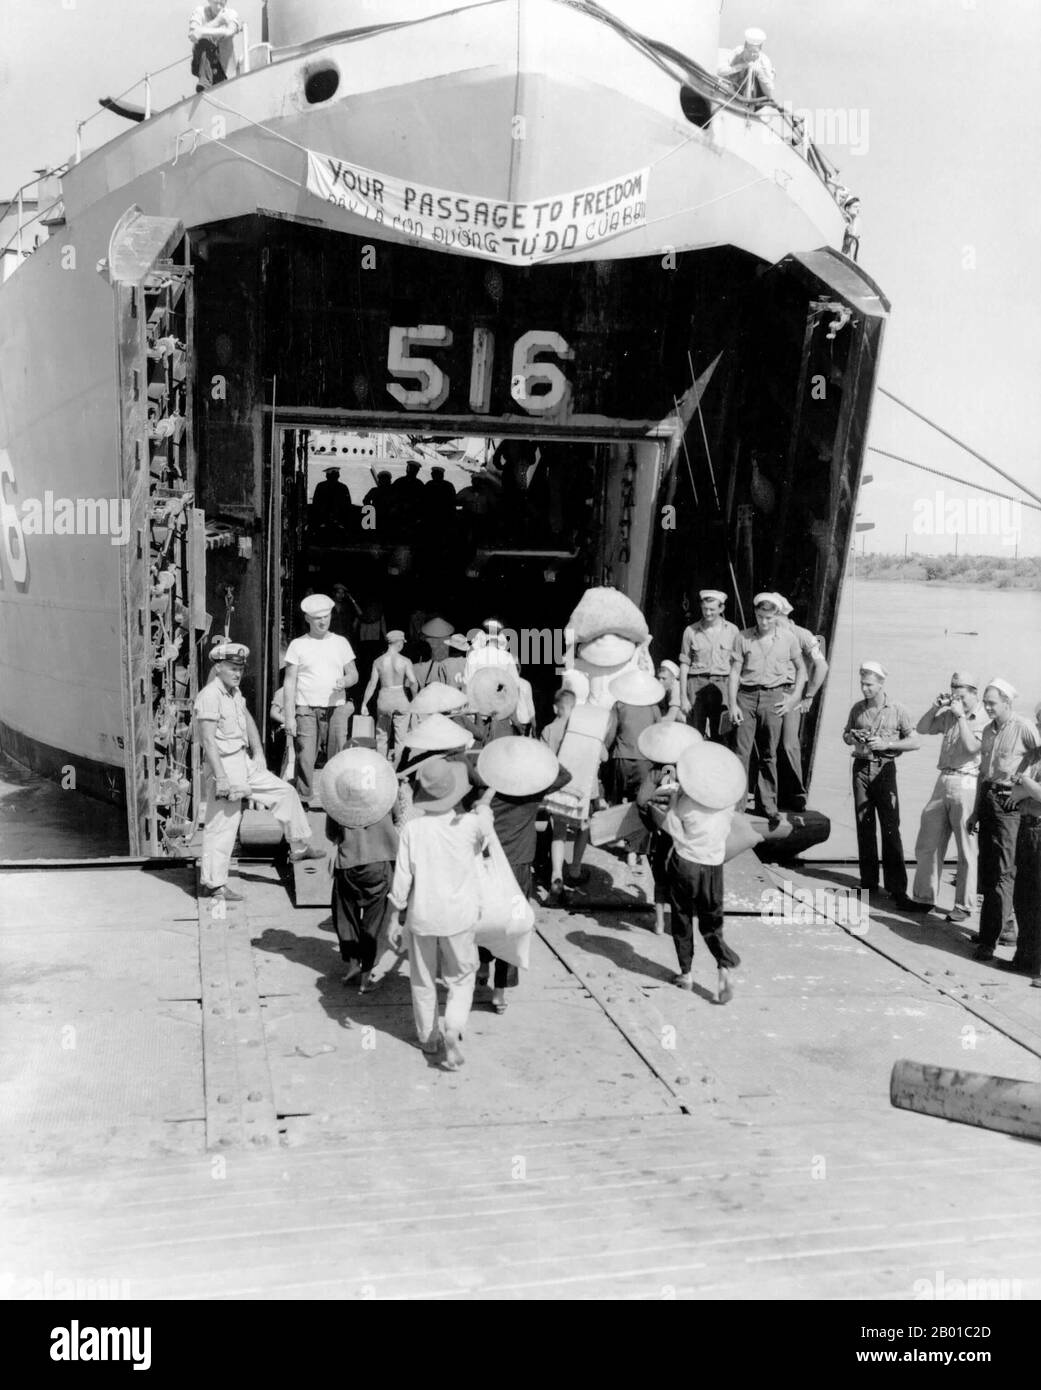 Vietnam: I rifugiati vietnamiti salgono a bordo di un'imbarcazione della Marina degli Stati Uniti ad Haiphong per il loro viaggio a sud verso Saigon, il 1954 ottobre. I rifugiati vietnamiti salgono a bordo della USS Calaveras County (LST-516) per il loro viaggio da Haiphong, Vietnam del Nord, a Saigon, Vietnam del Sud durante l'operazione Passage to Freedom, ottobre 1954. Questa operazione ha evacuato migliaia di rifugiati vietnamiti dall'allora neocreato Vietnam comunista del Nord verso il Vietnam pro-americano del Sud. Alla fine dell'operazione, la Marina aveva portato a sud più di 293.000 immigrati, tra cui molti rifugiati cattolici. Foto Stock